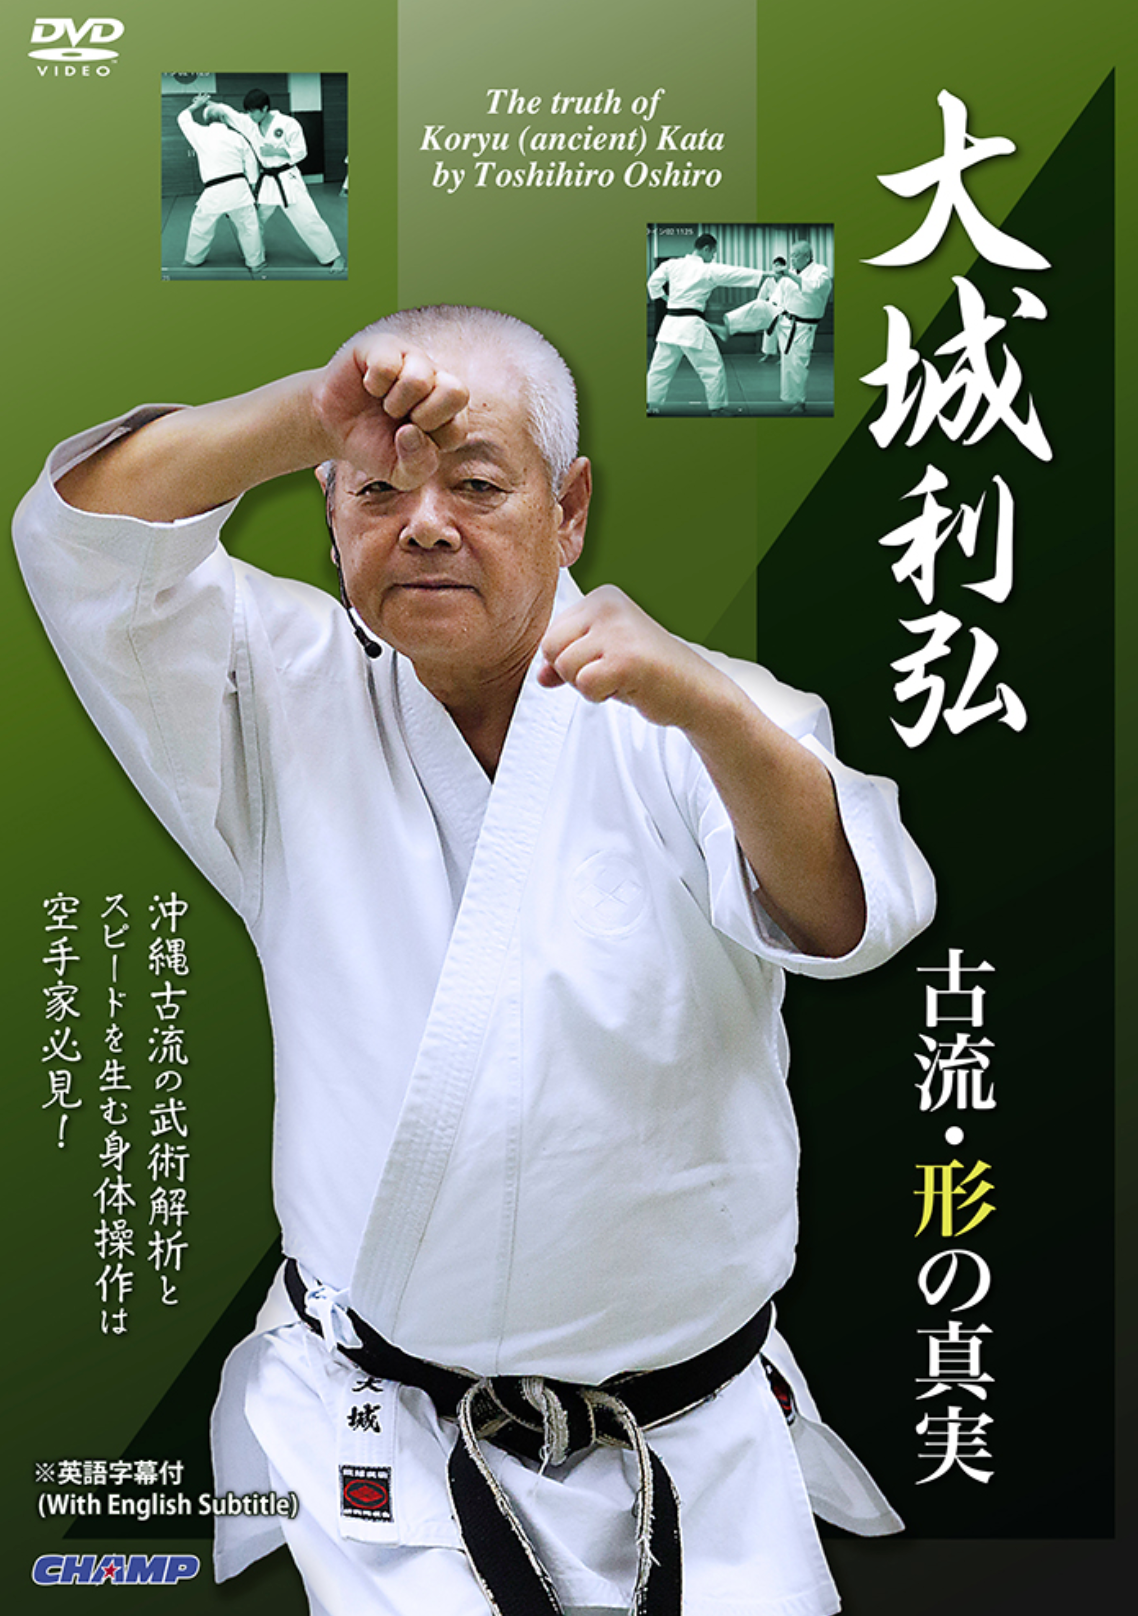 DVD La verdad de Koryu Kata de Toshihiro Oshiro 